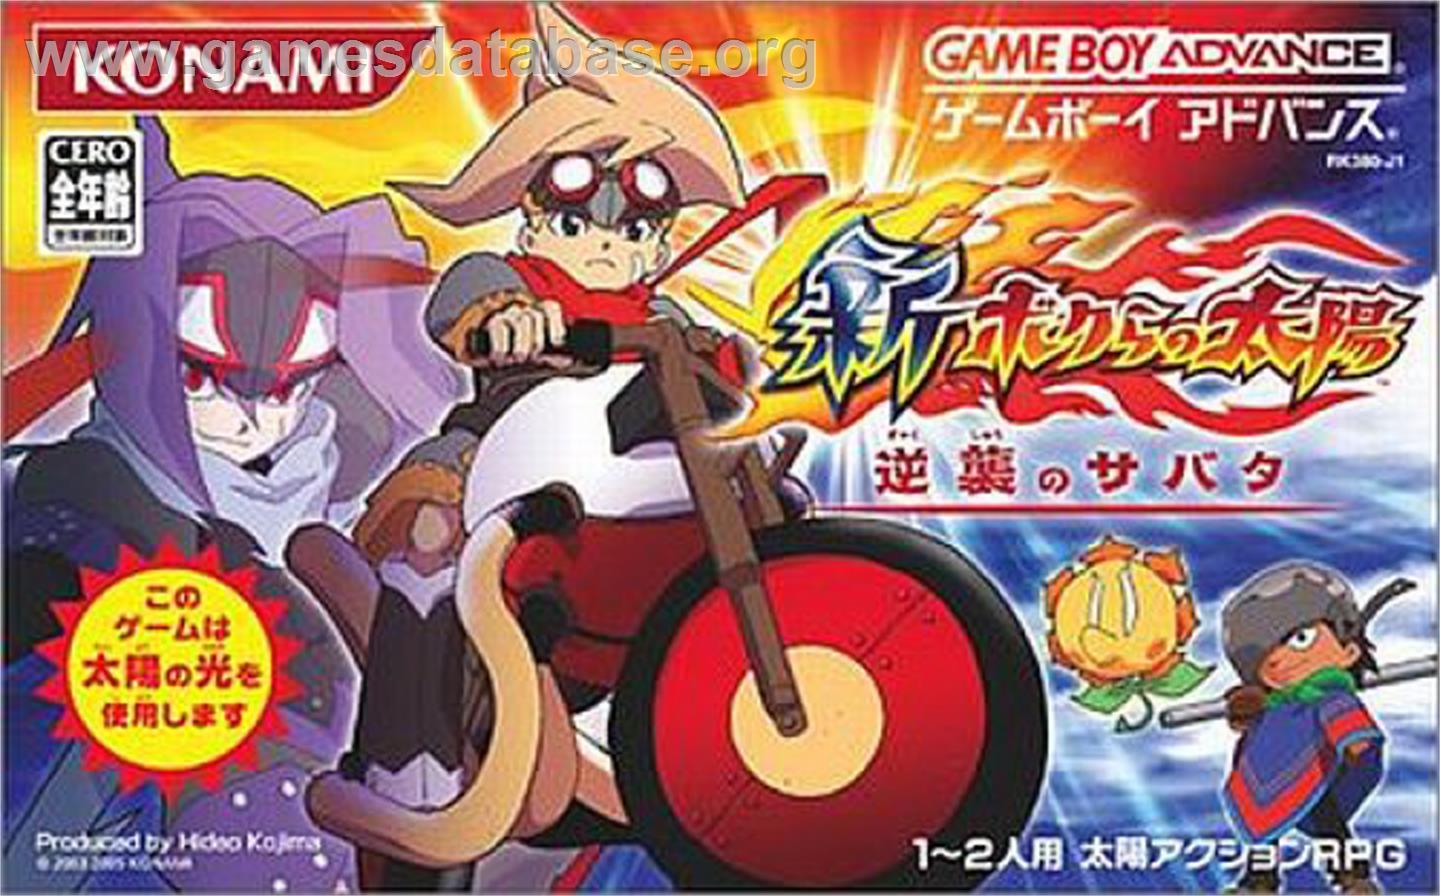 Shin Bokura no Taiyo Gyakushu no Sabata - Nintendo Game Boy Advance - Artwork - Box